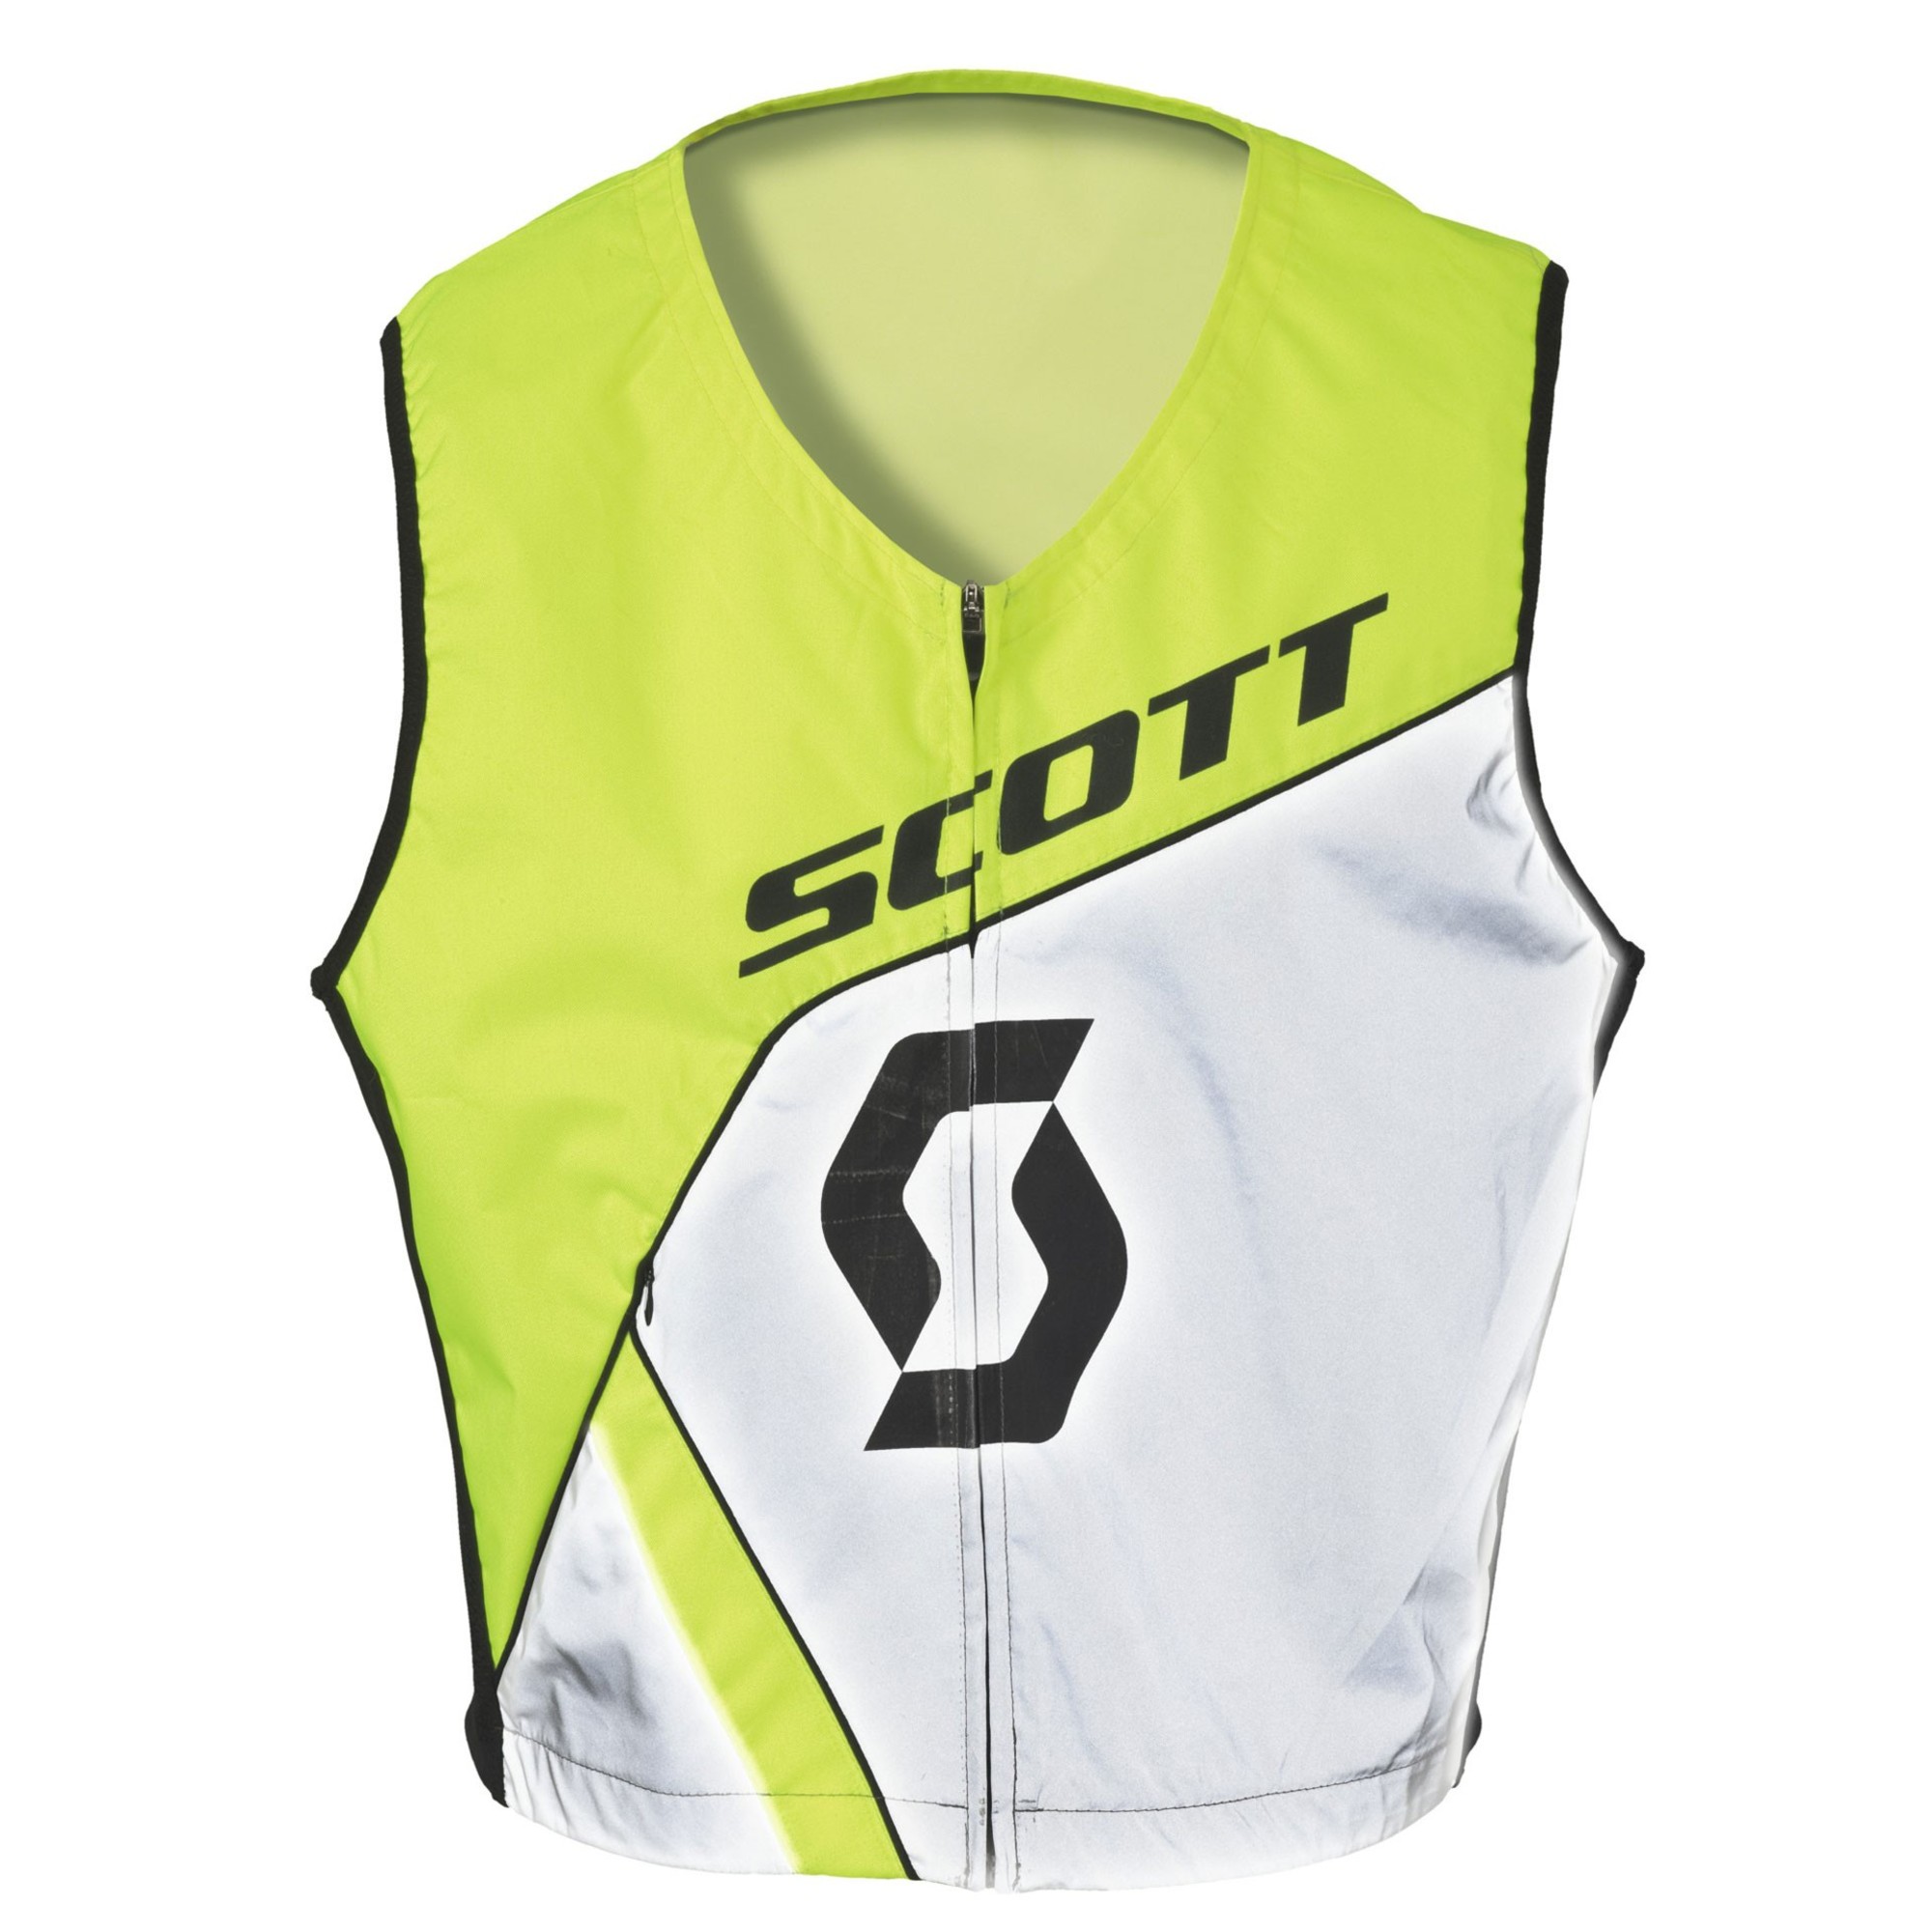 scott vests for men high visibility